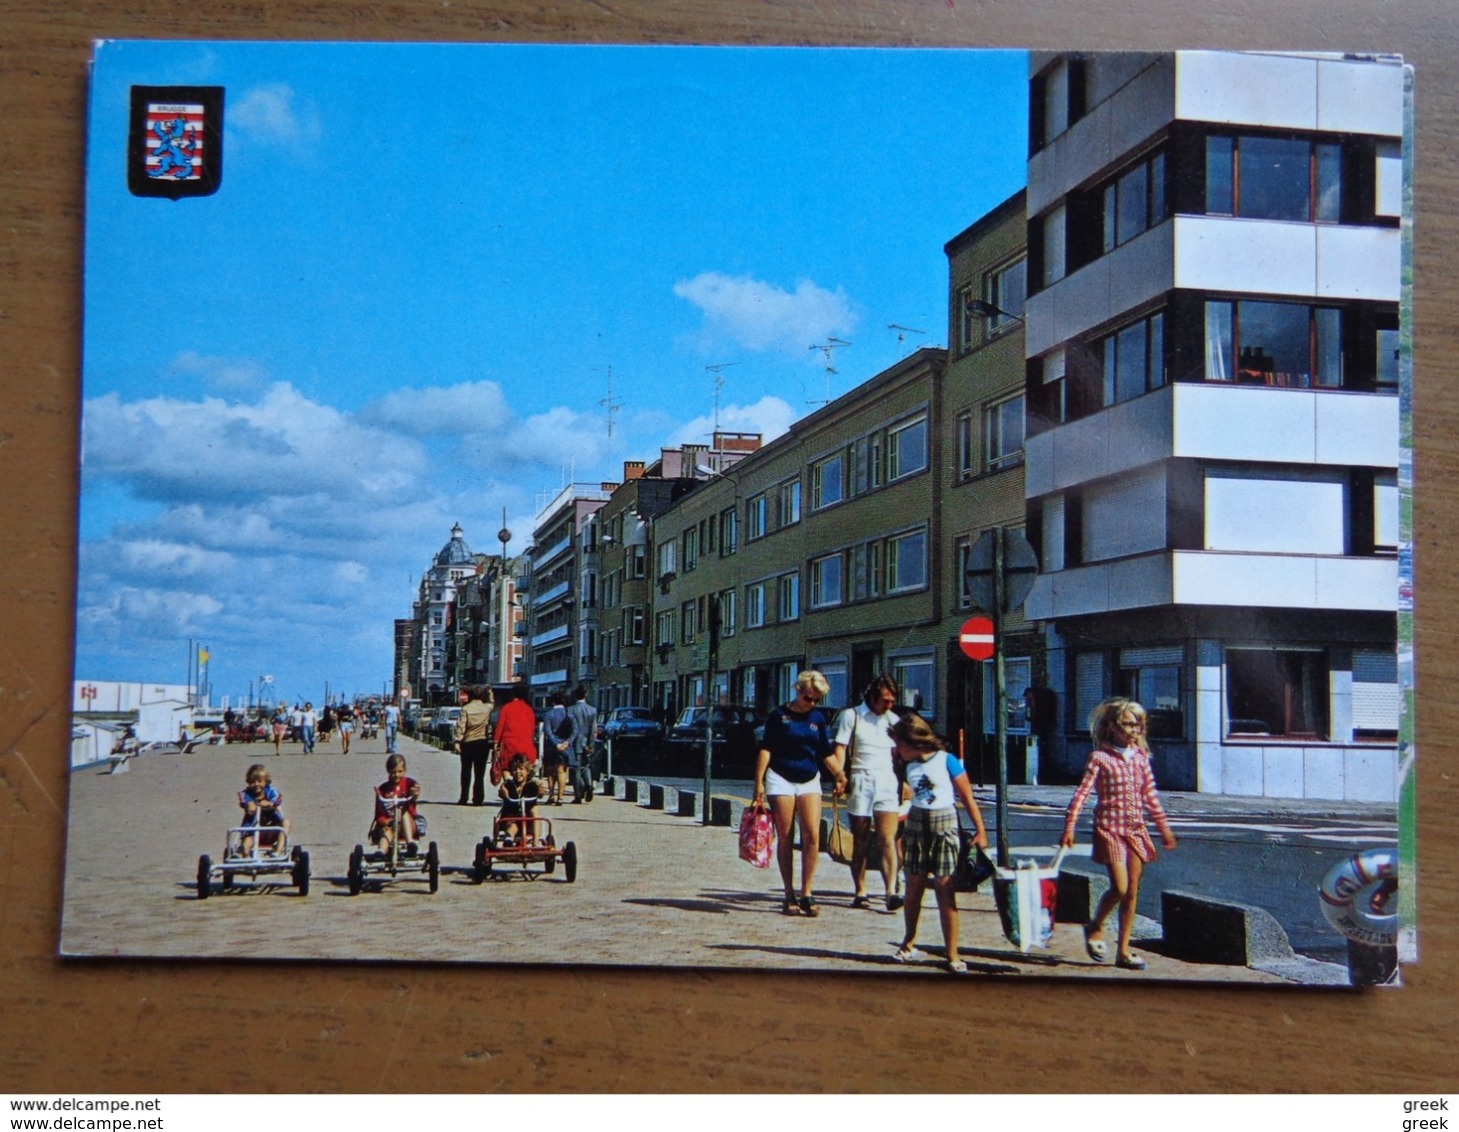 Doos postkaarten (3kg866) Allerlei landen en thema's, ook België gekleurd (zie enkele foto's)